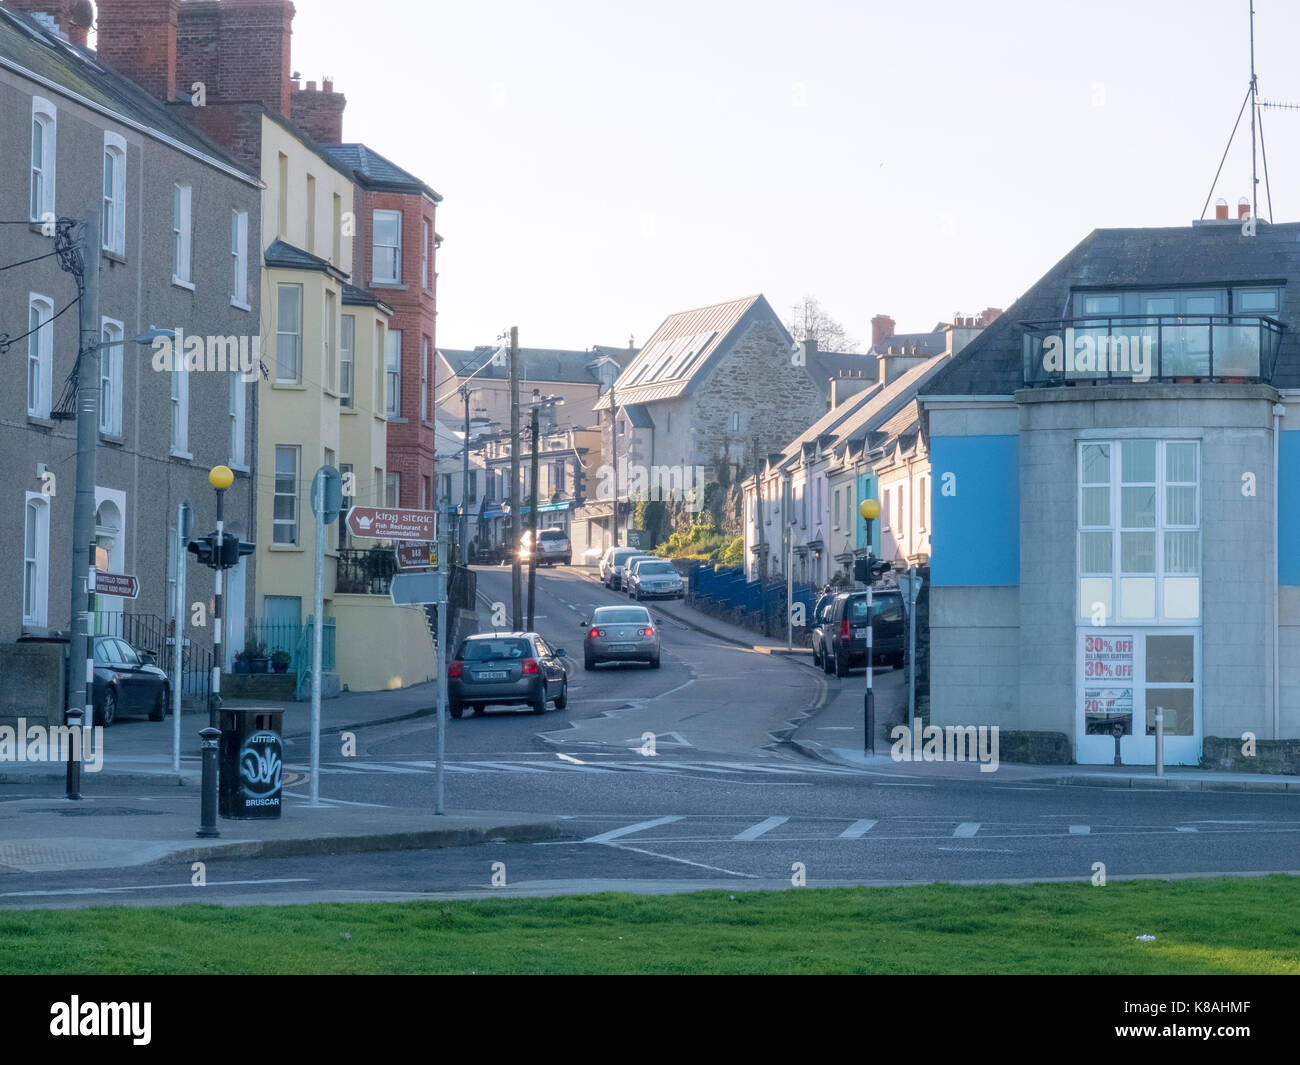 Howth town - Dublin, Ireland Stock Photo